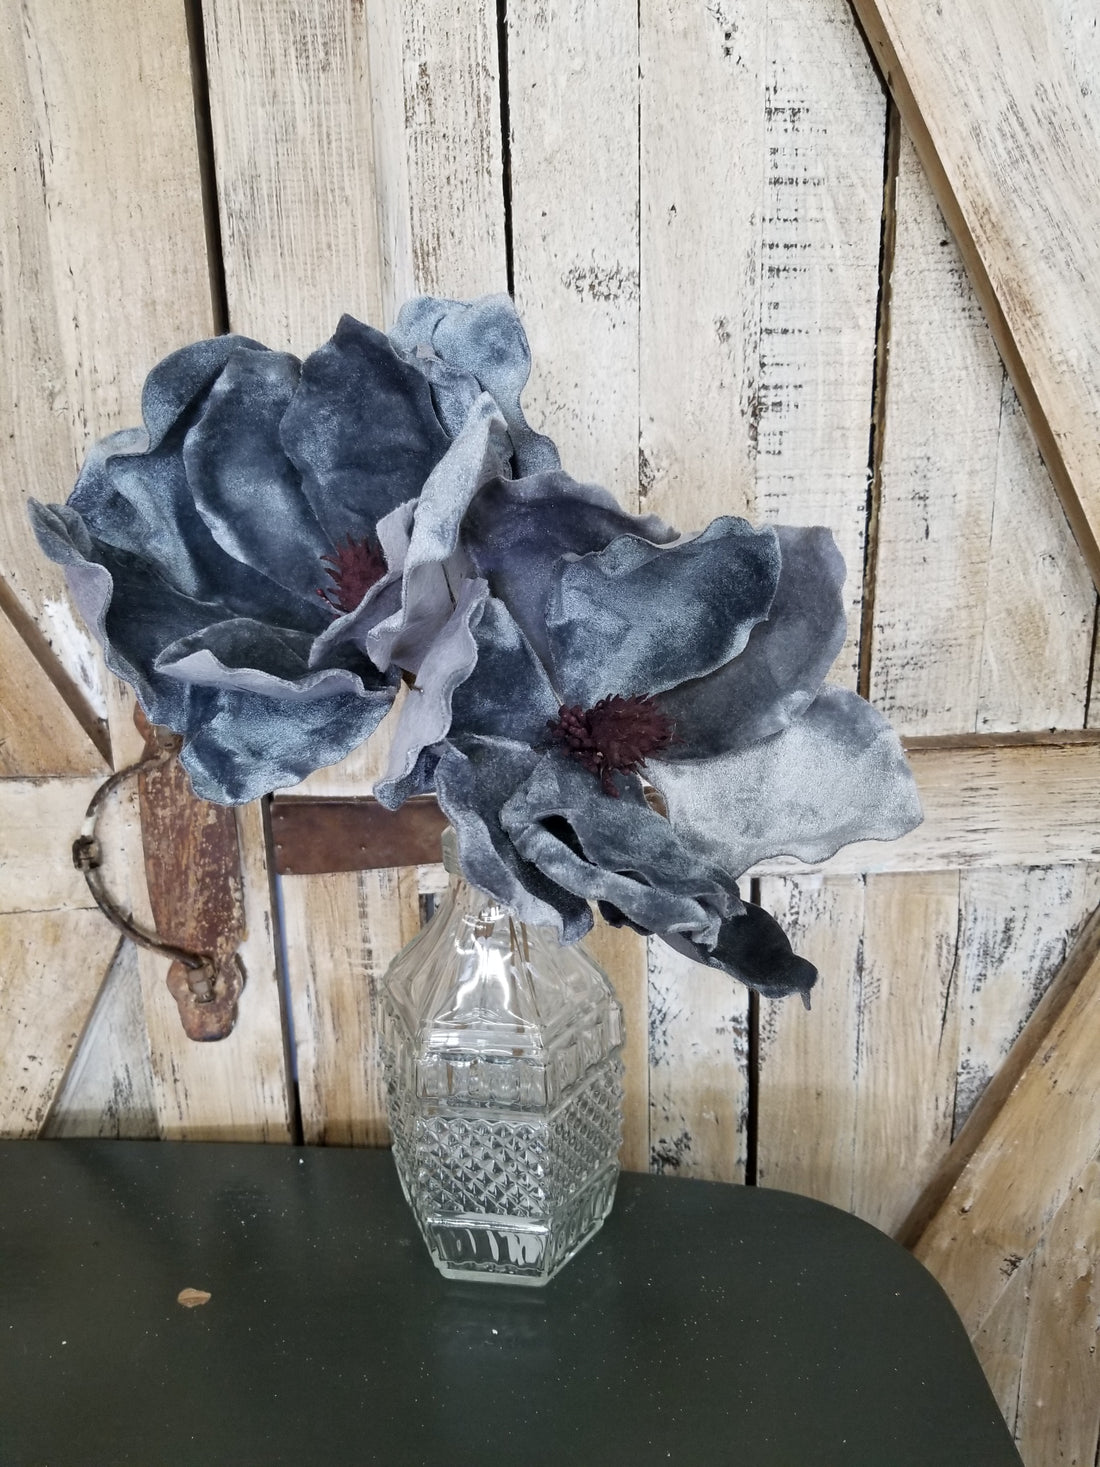 Rounded Blue Velvet Poinsettia